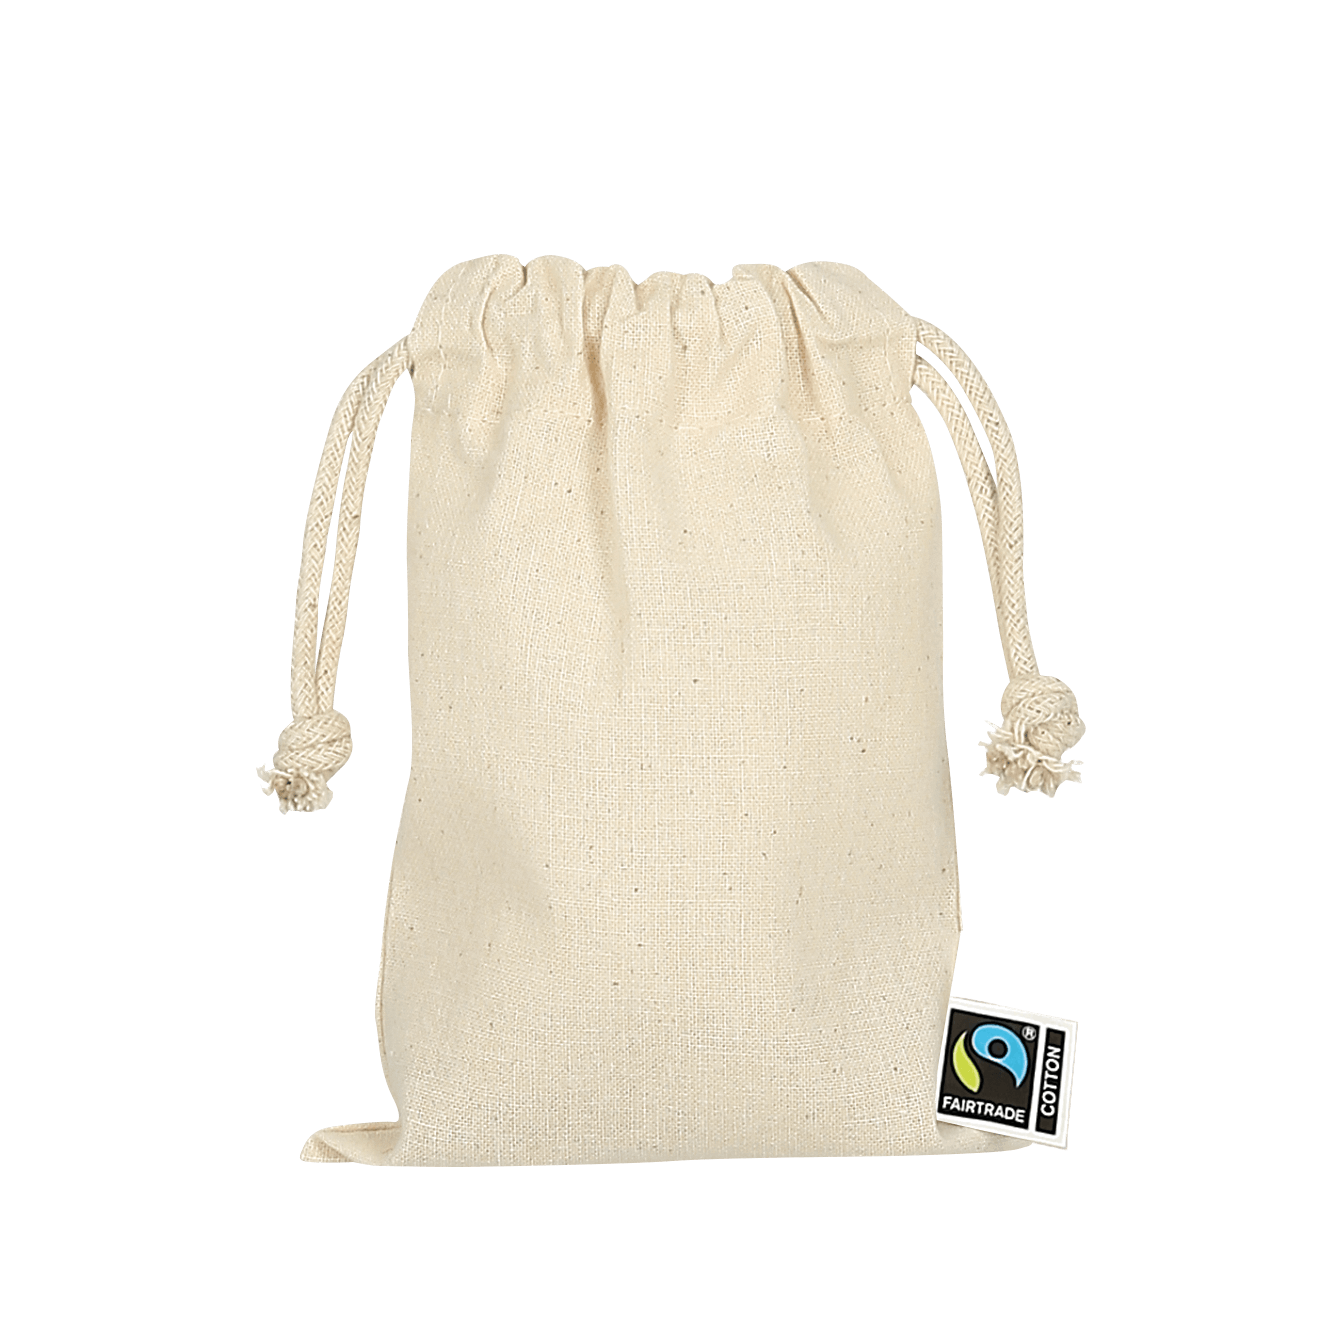 TEXXILLA Zuziehbeutel aus Fairtrade-zertifizierter Baumwolle, 10 x 14 cm